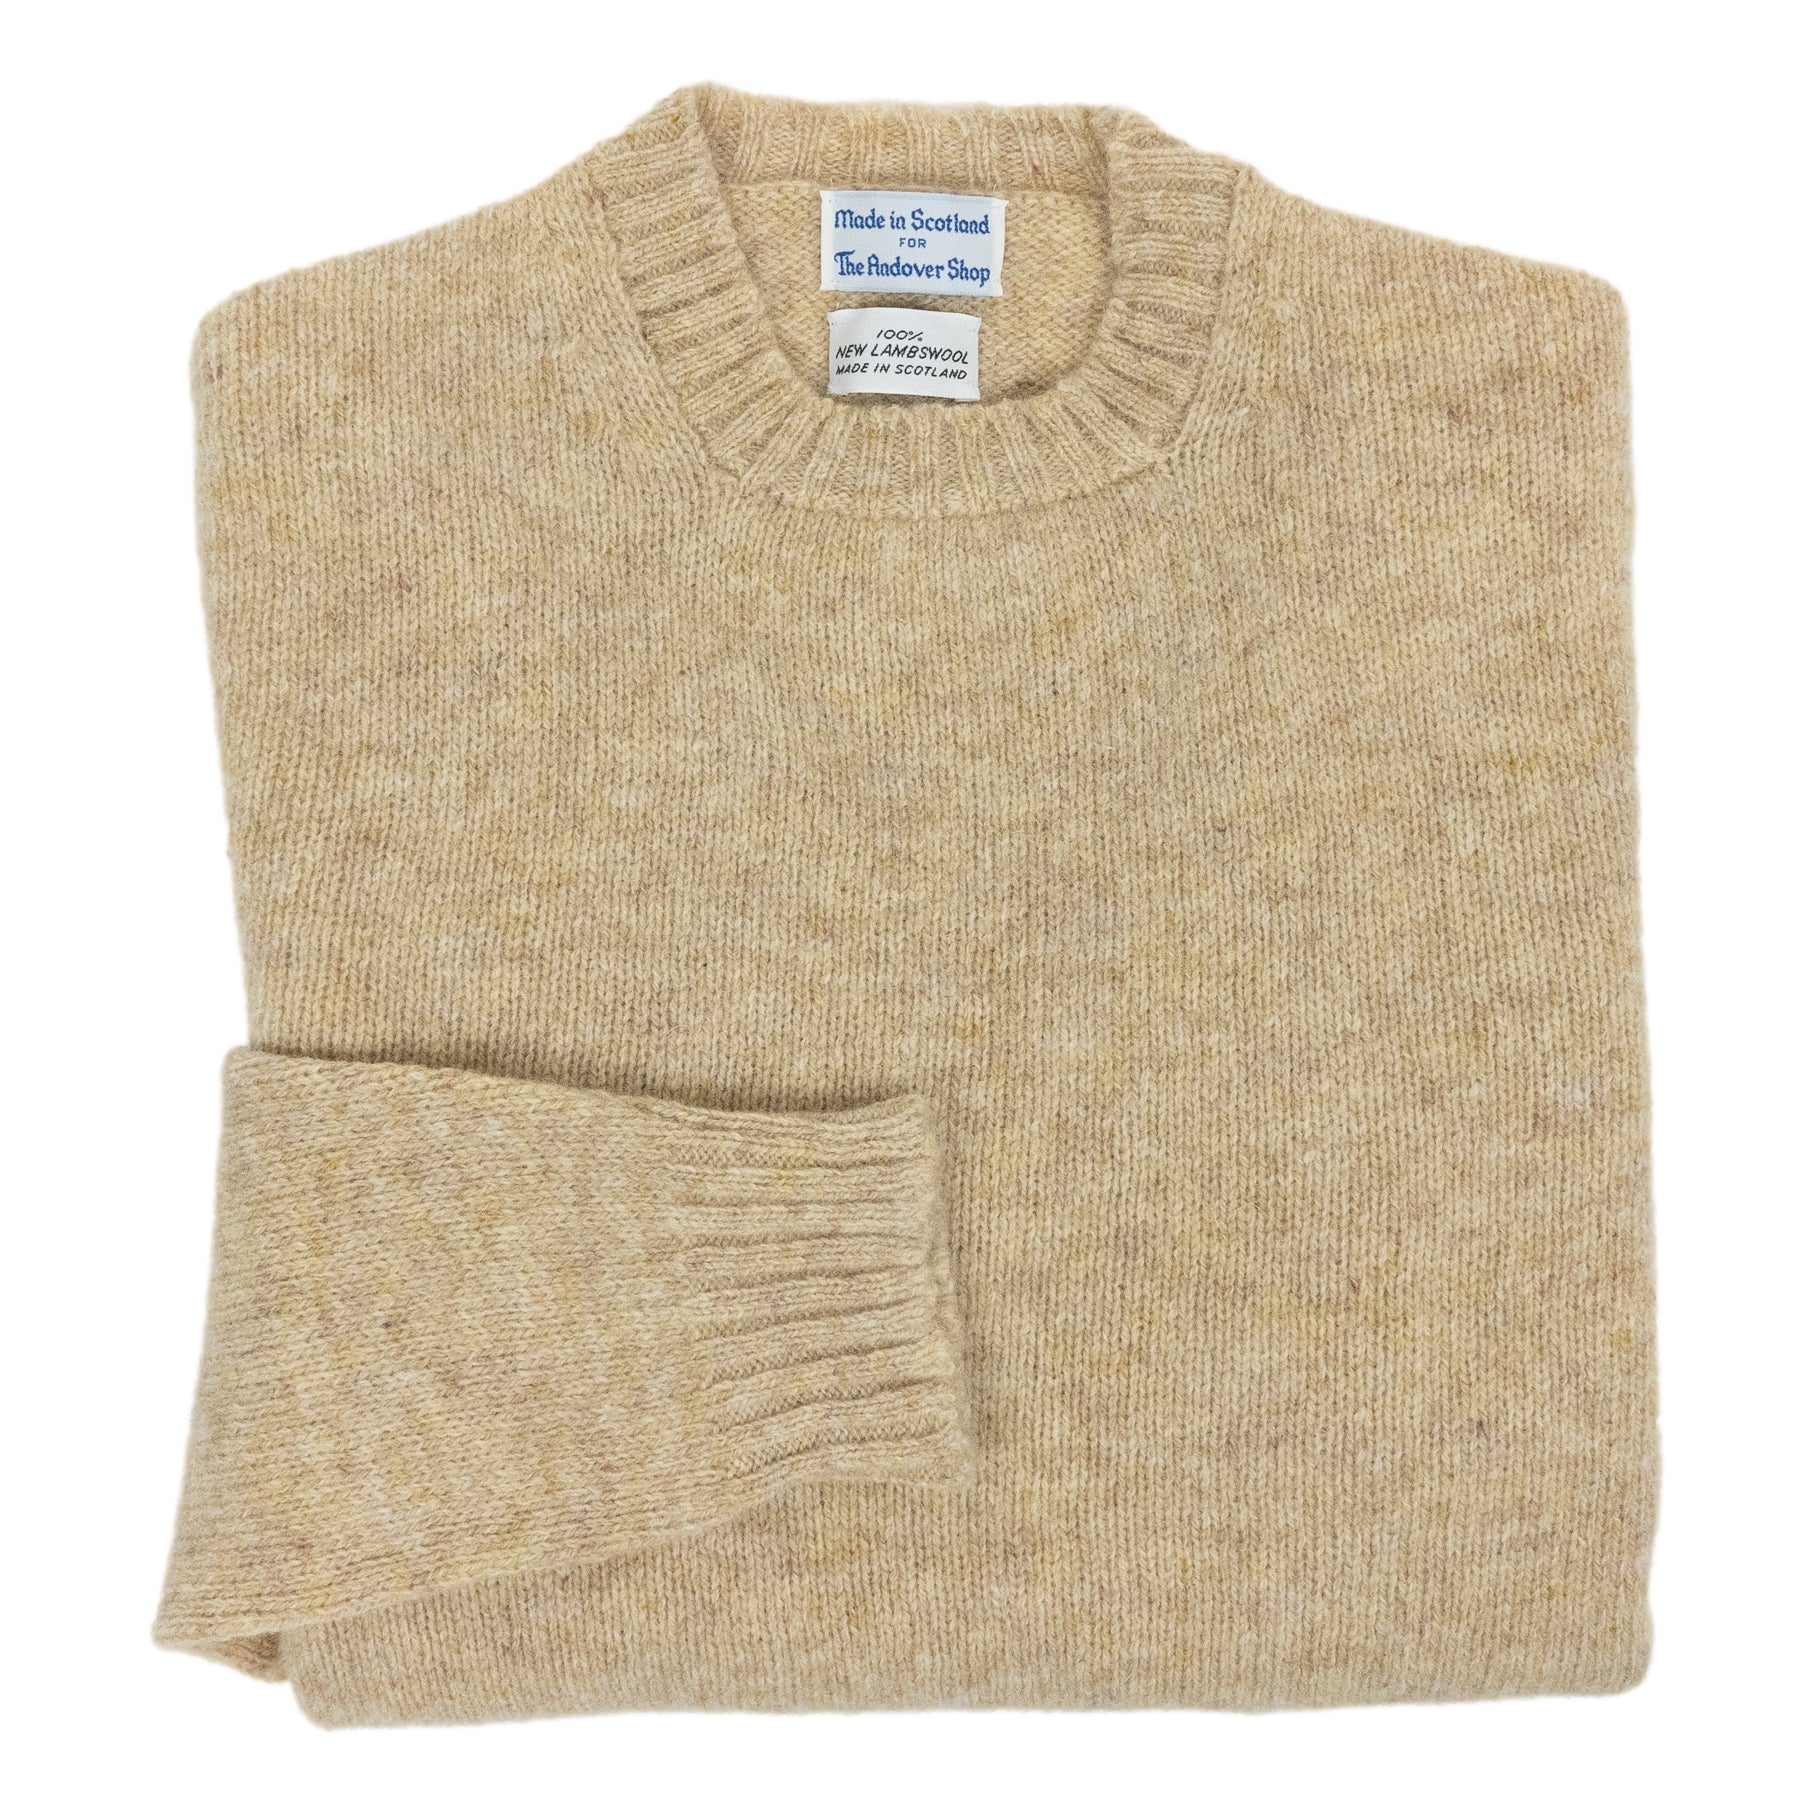 Scottish Shetland Wool Sweater